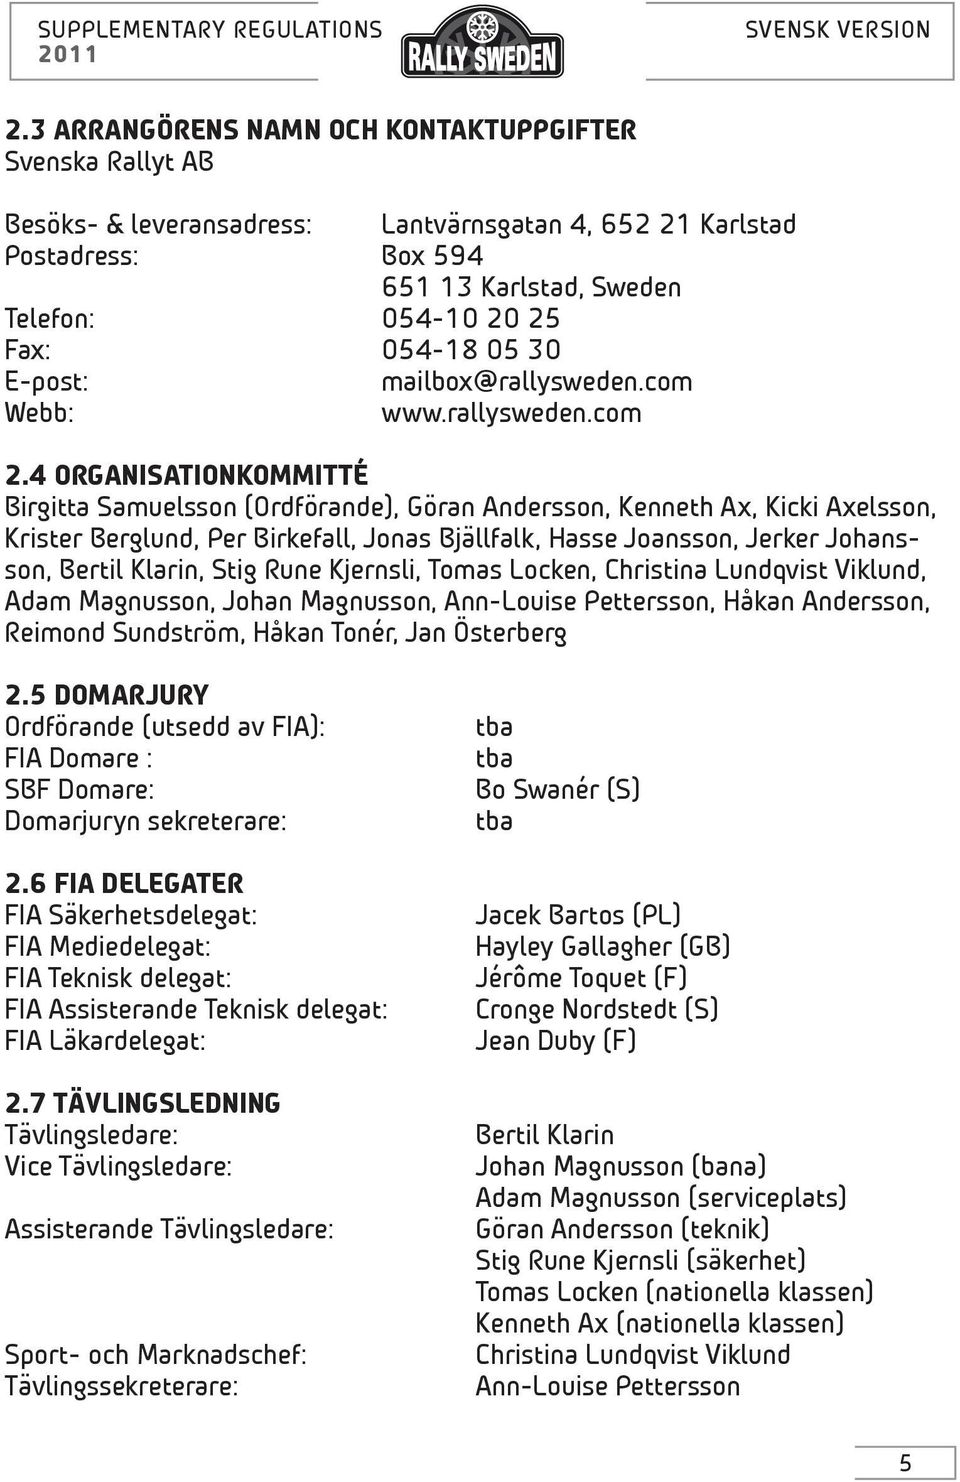 4 ORGANISATIONKOMMITTÉ Birgitta Samuelsson (Ordförande), Göran Andersson, Kenneth Ax, Kicki Axelsson, Krister Berglund, Per Birkefall, Jonas Bjällfalk, Hasse Joansson, Jerker Johansson, Bertil